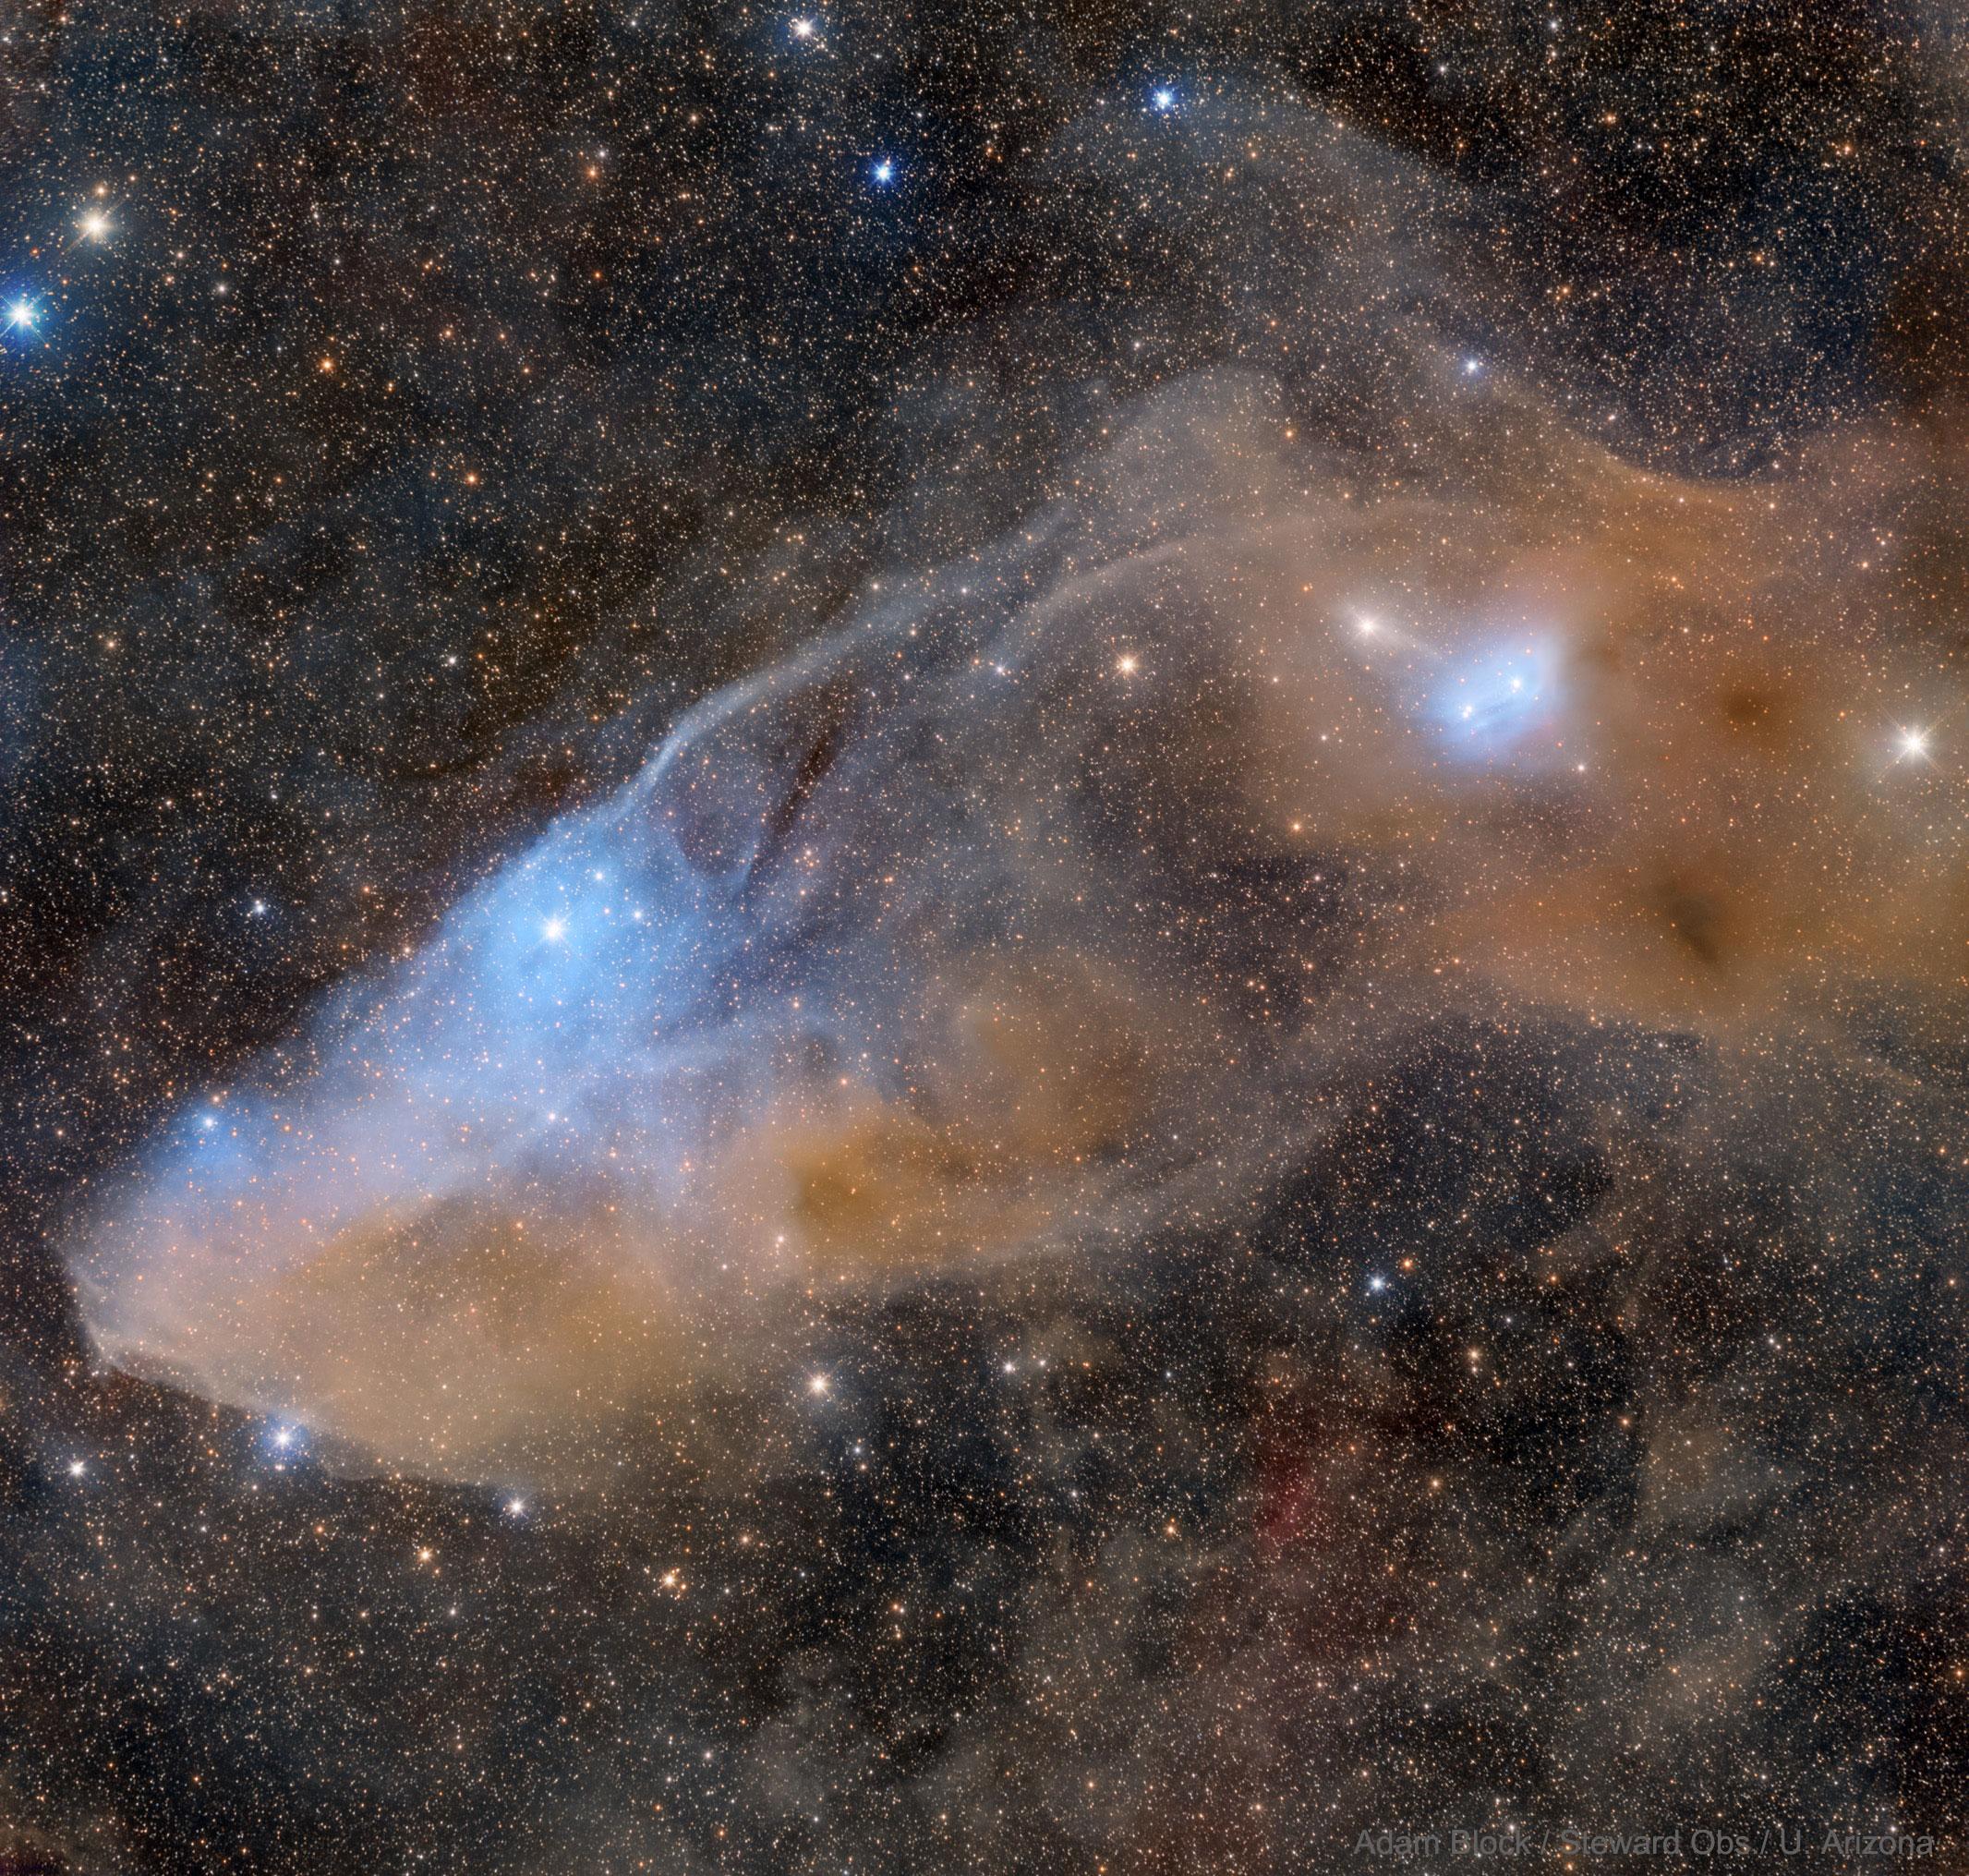 تُظهر الصورة السديم العاكس IC 4592 المعروف بسديم رأس الحصان الأزرق.